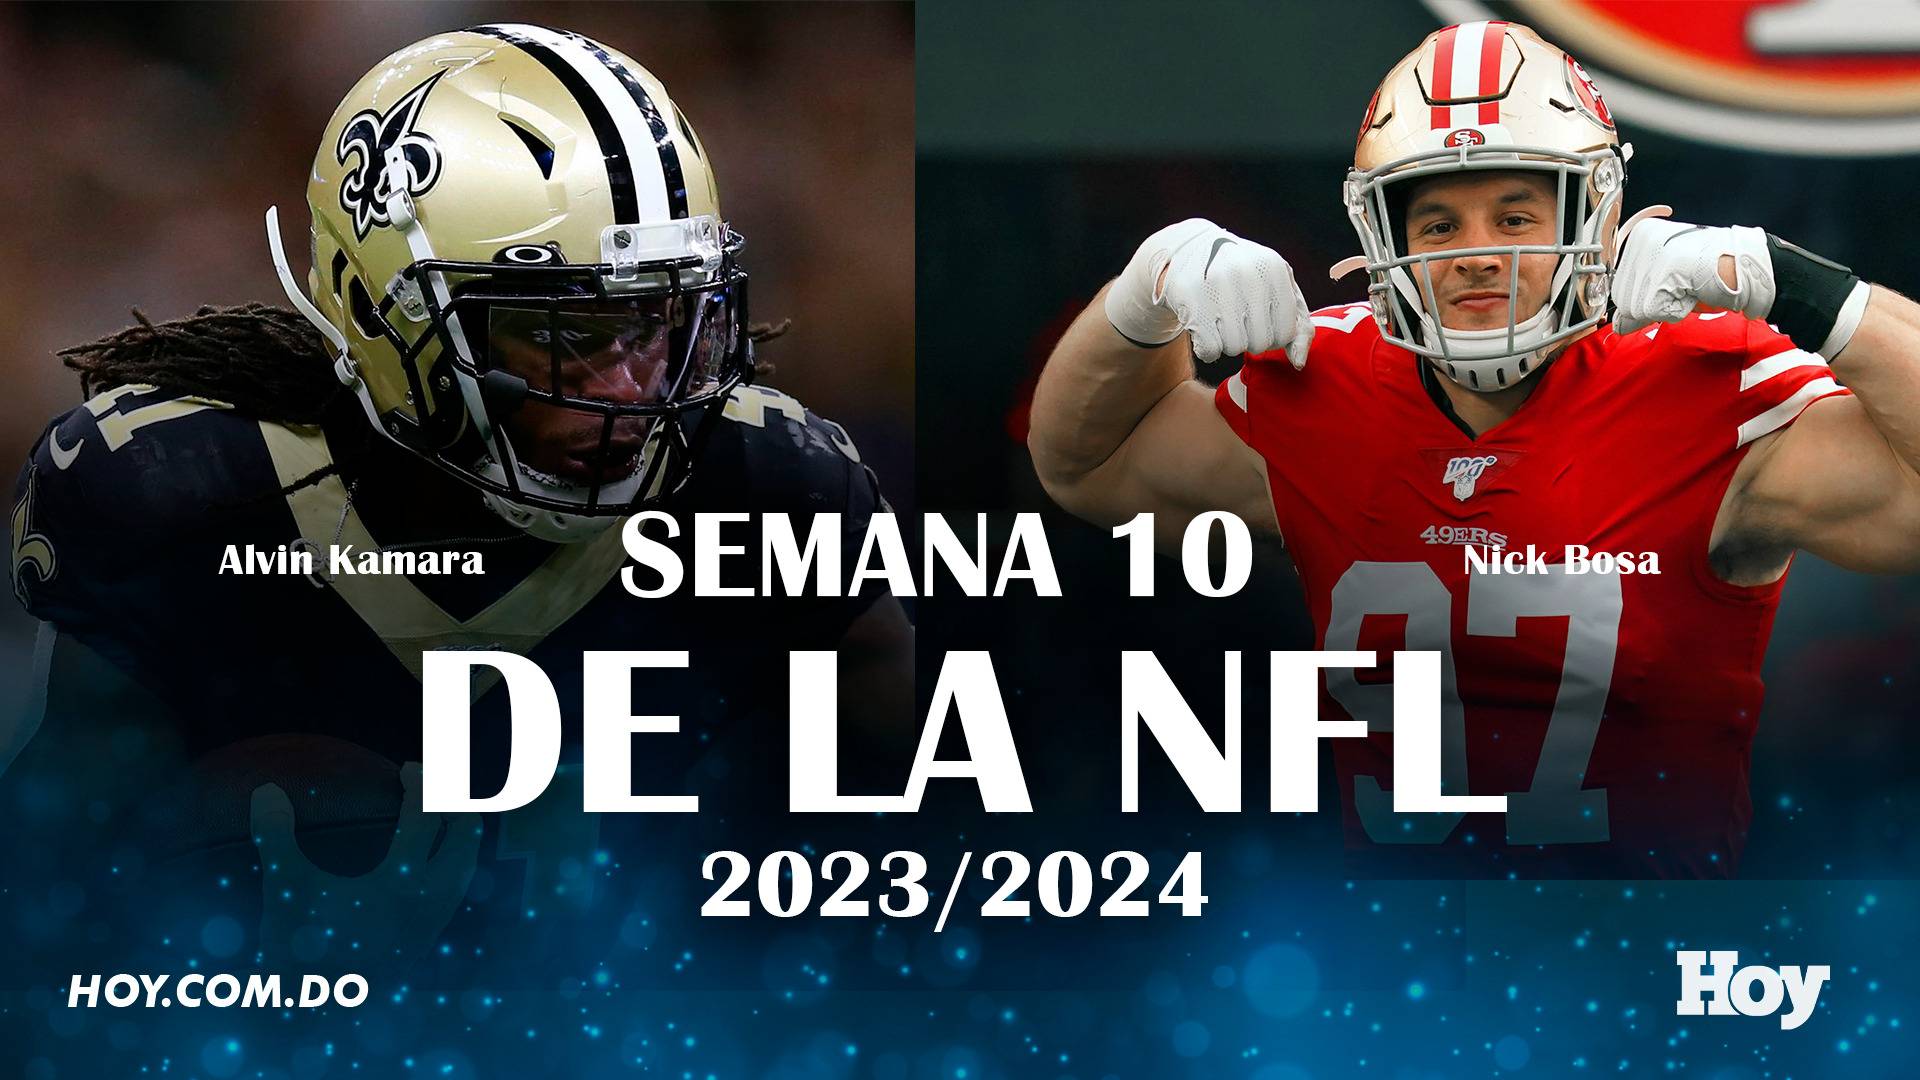 Semana 10 de la NFL 2023-2024: ¿Quiénes son los favoritos a ganar?